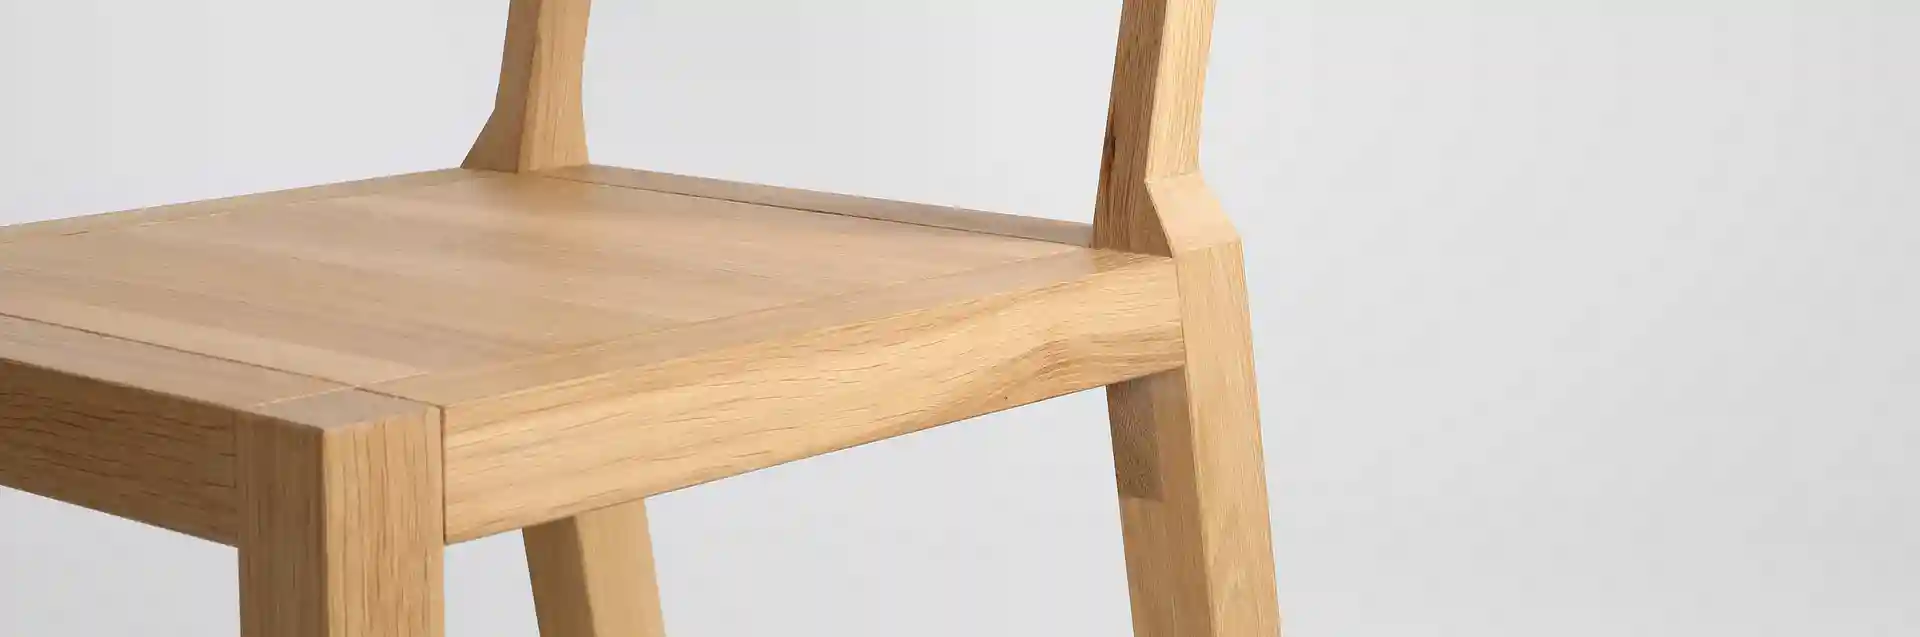 Krzesło z drewna dębowego MILONI BLOX, Kolor: 03: Natural, Wymiary: Dł: 45 x Sz: 44 x Wys: 45 cm, polskie krzesła z drewna, drewniane krzesło, dębowe krzesła